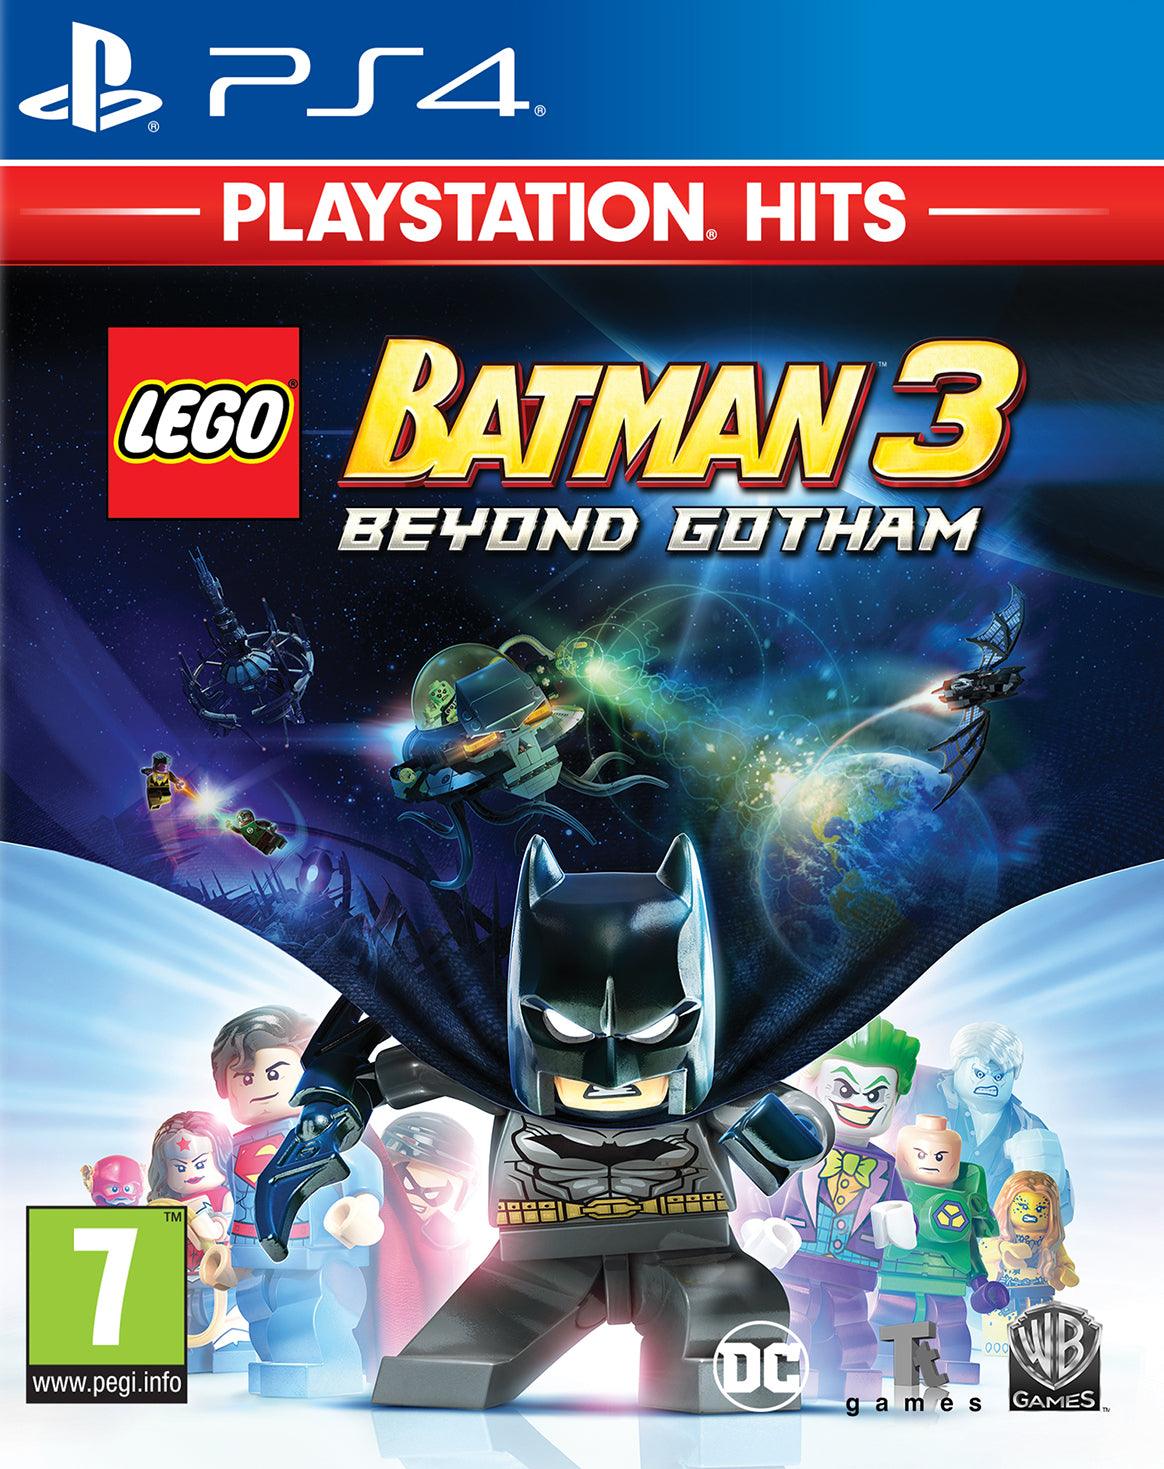 Playstation Hits Lego Batman 3 - Want a New Gadget